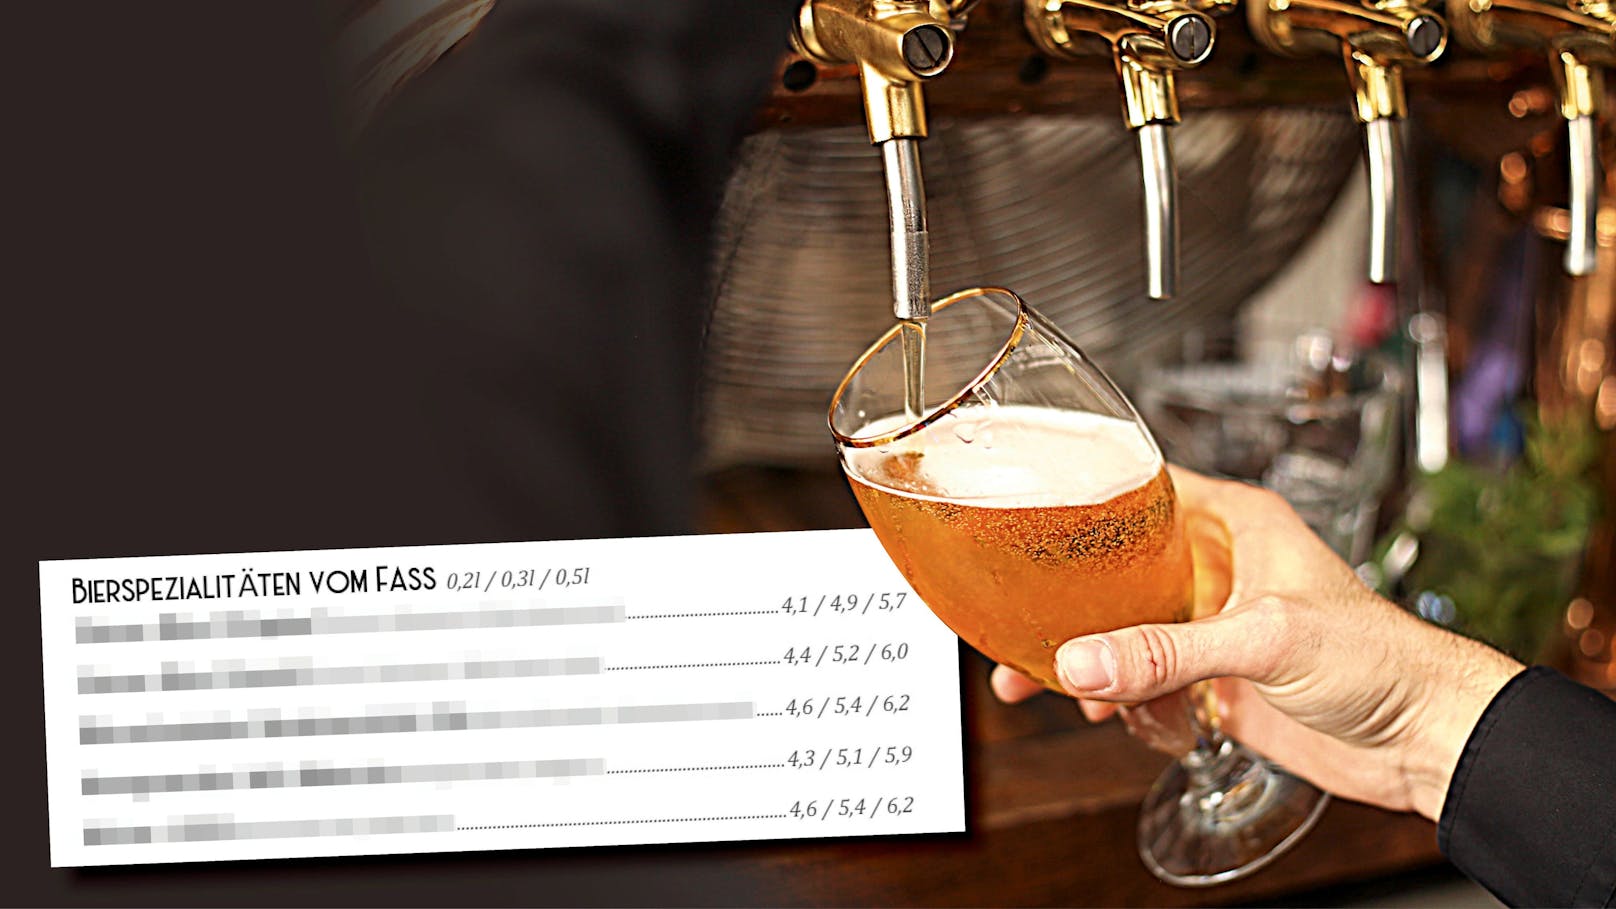 Preisknaller! Gasthaus verlangt 6,20 € für Krügerl Bier